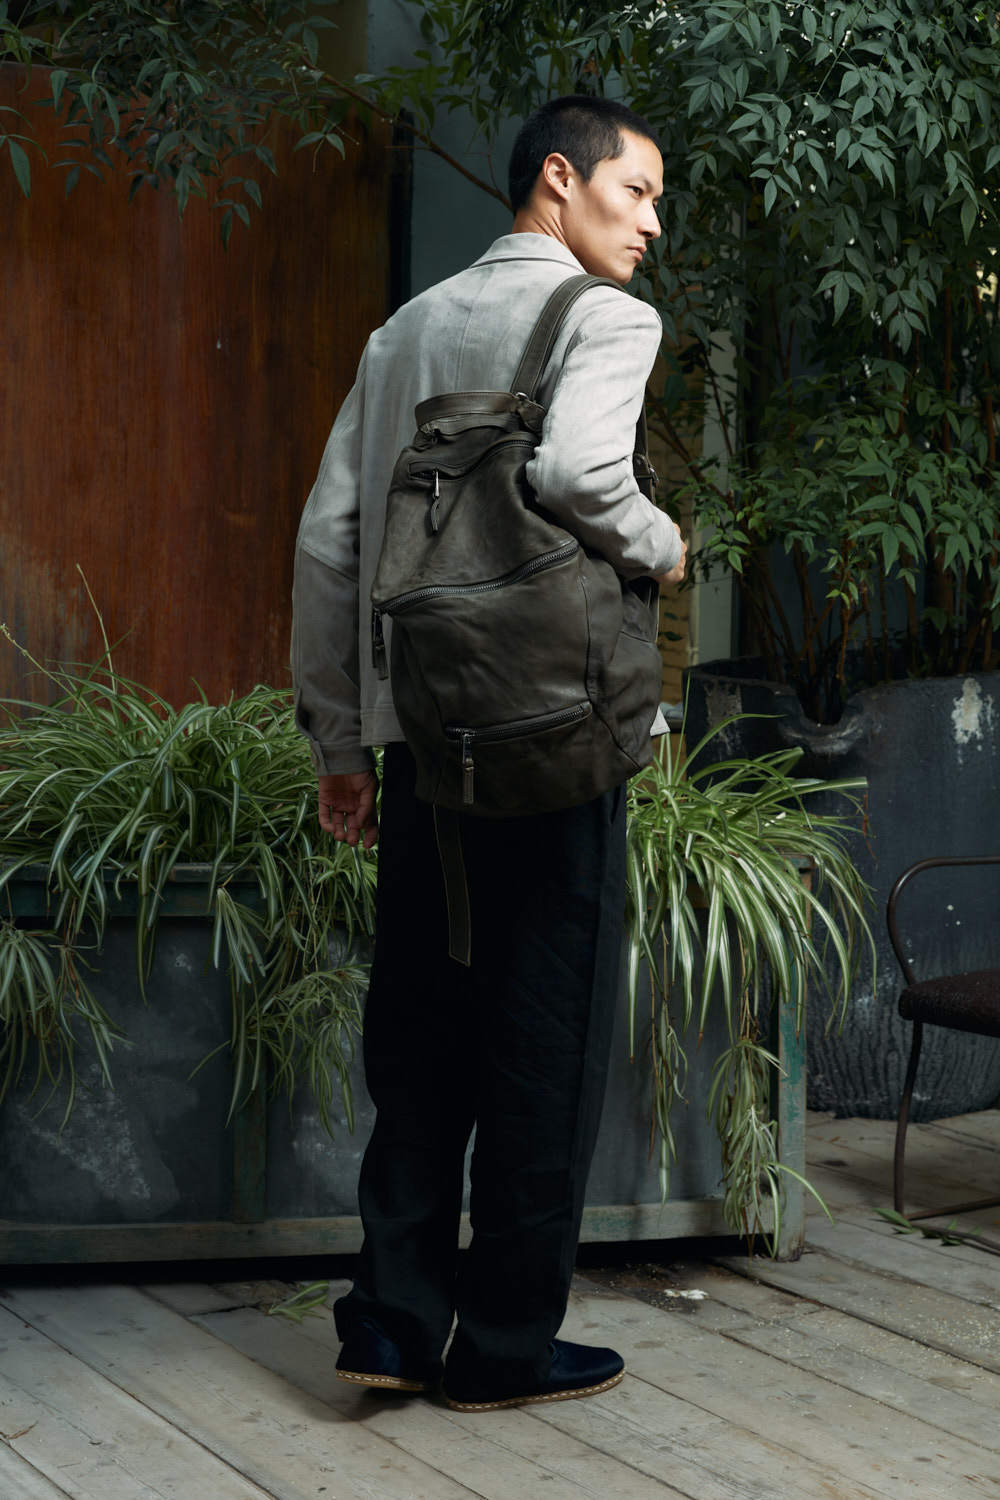 Giorgio Brato | Leather Backpack